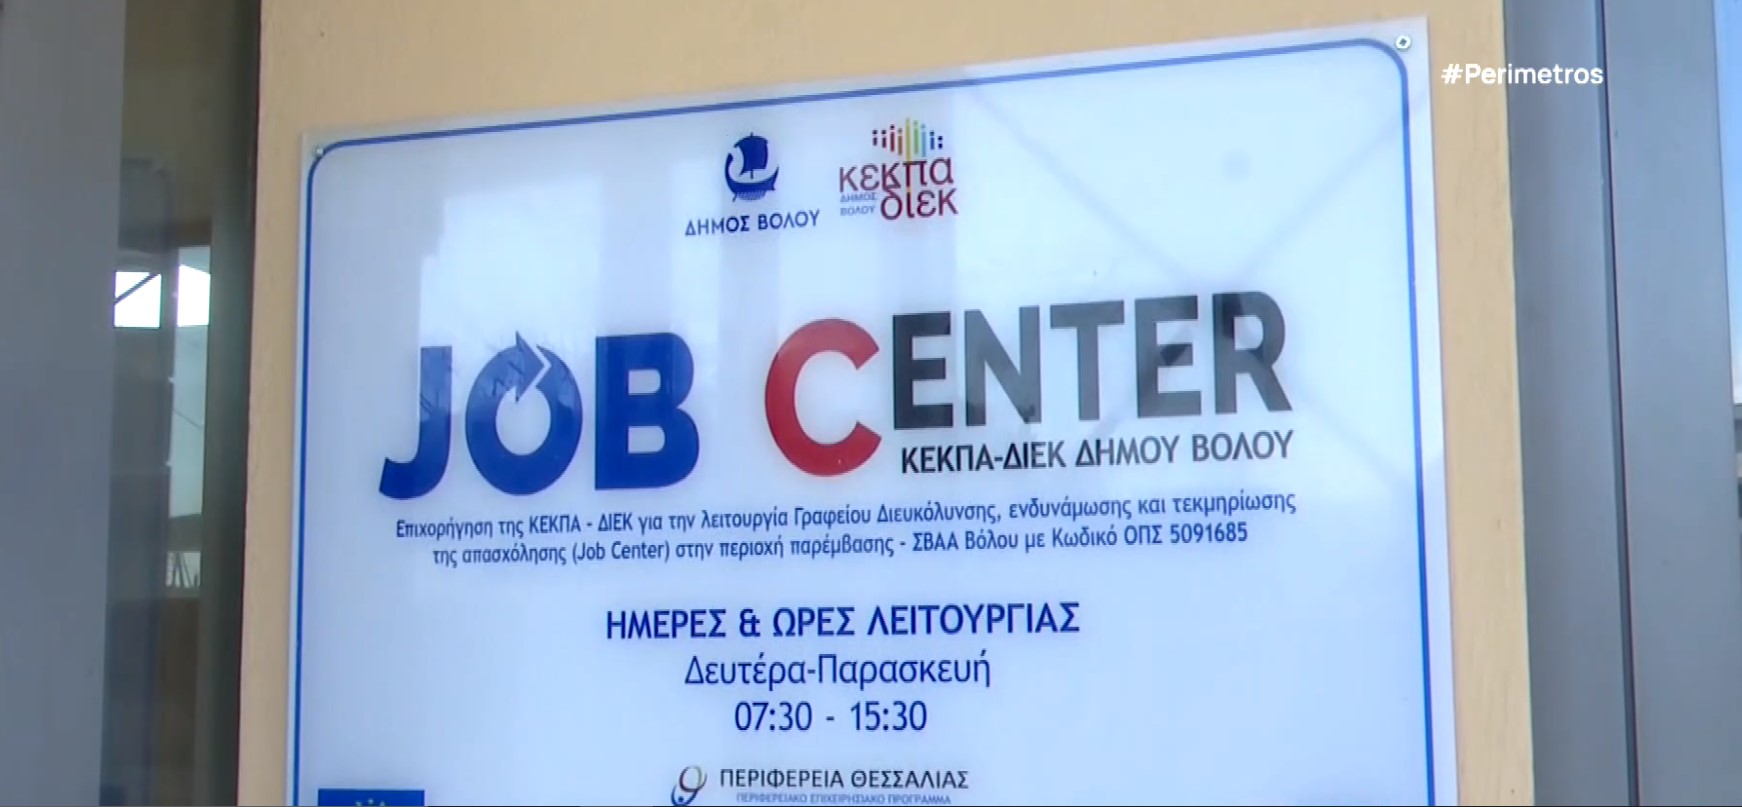 Βόλος : “Job Center” – Το γραφείο υποστήριξης εργασίας του Δήμου